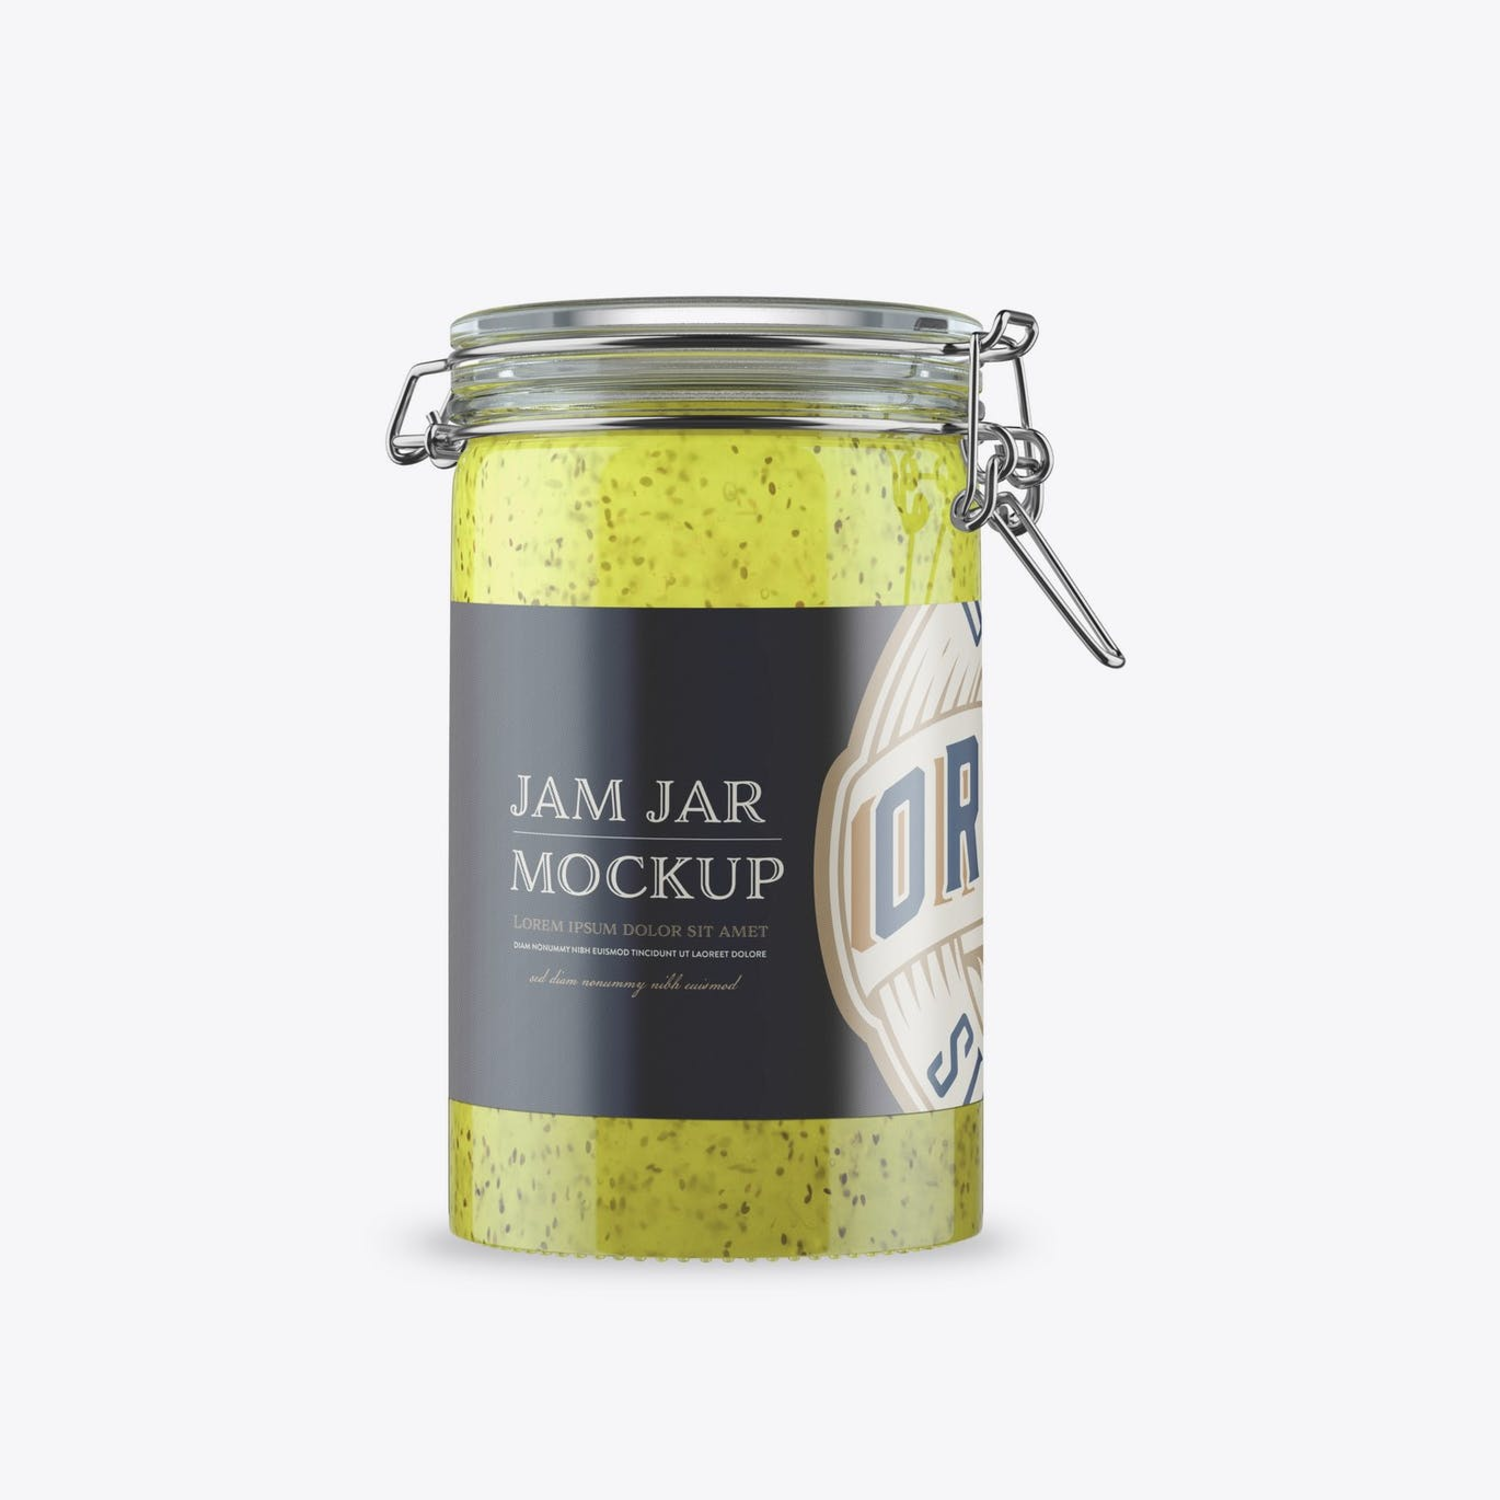 6282 猕猴桃果酱罐包装设计样机psd模板 Kiwi Jam in Classic Jar Mockup